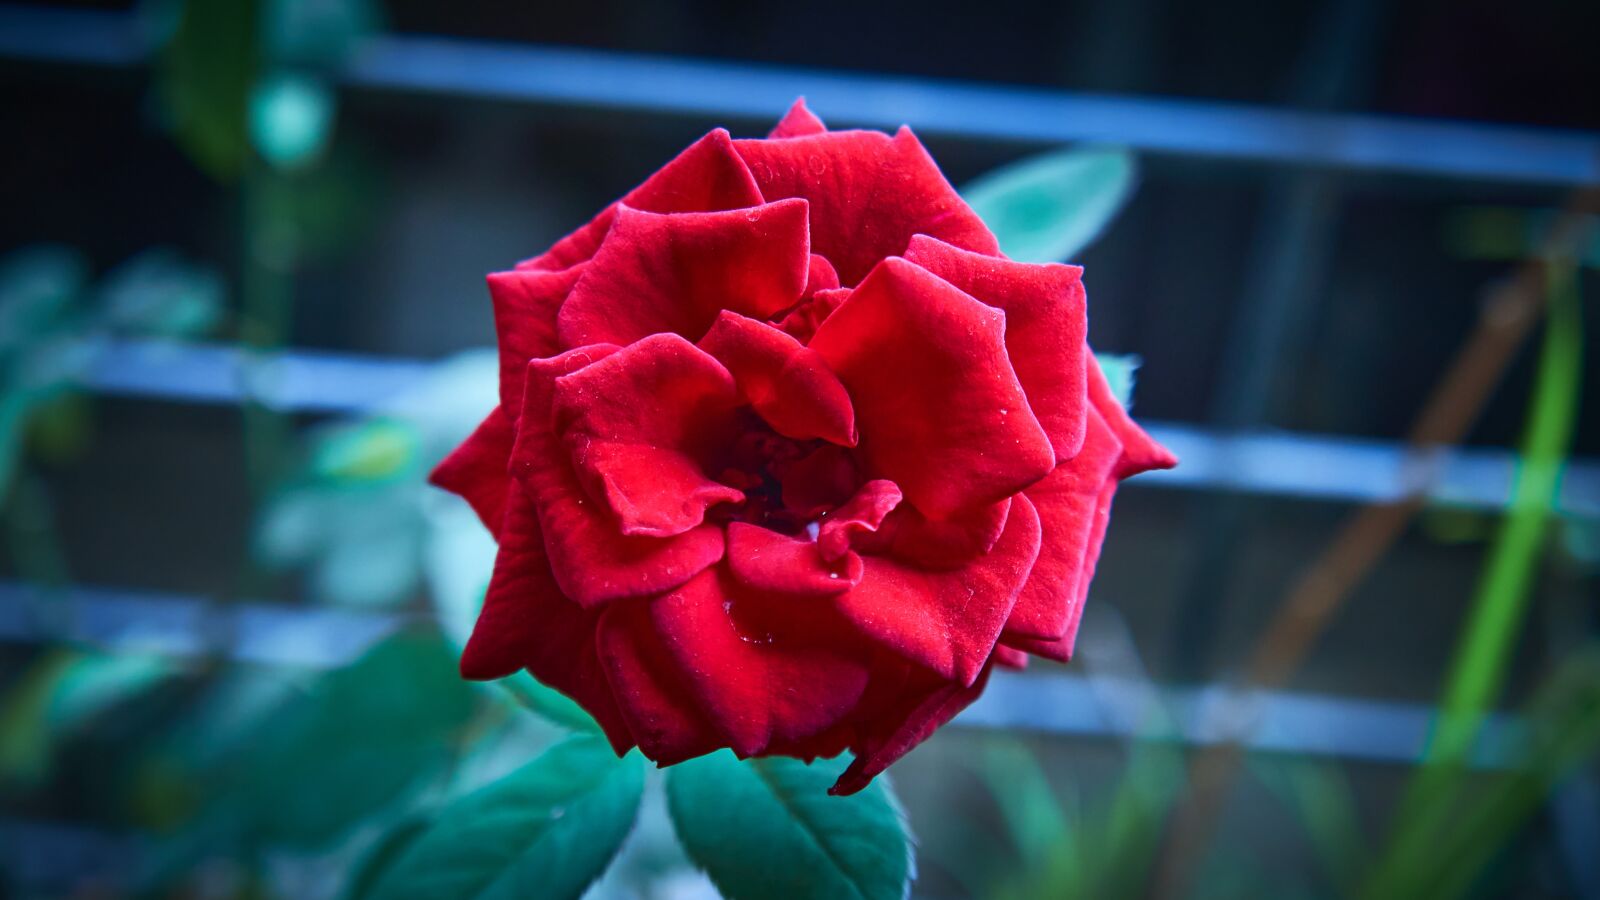 Sony E 18-55mm F3.5-5.6 OSS sample photo. Rose, flower, love photography